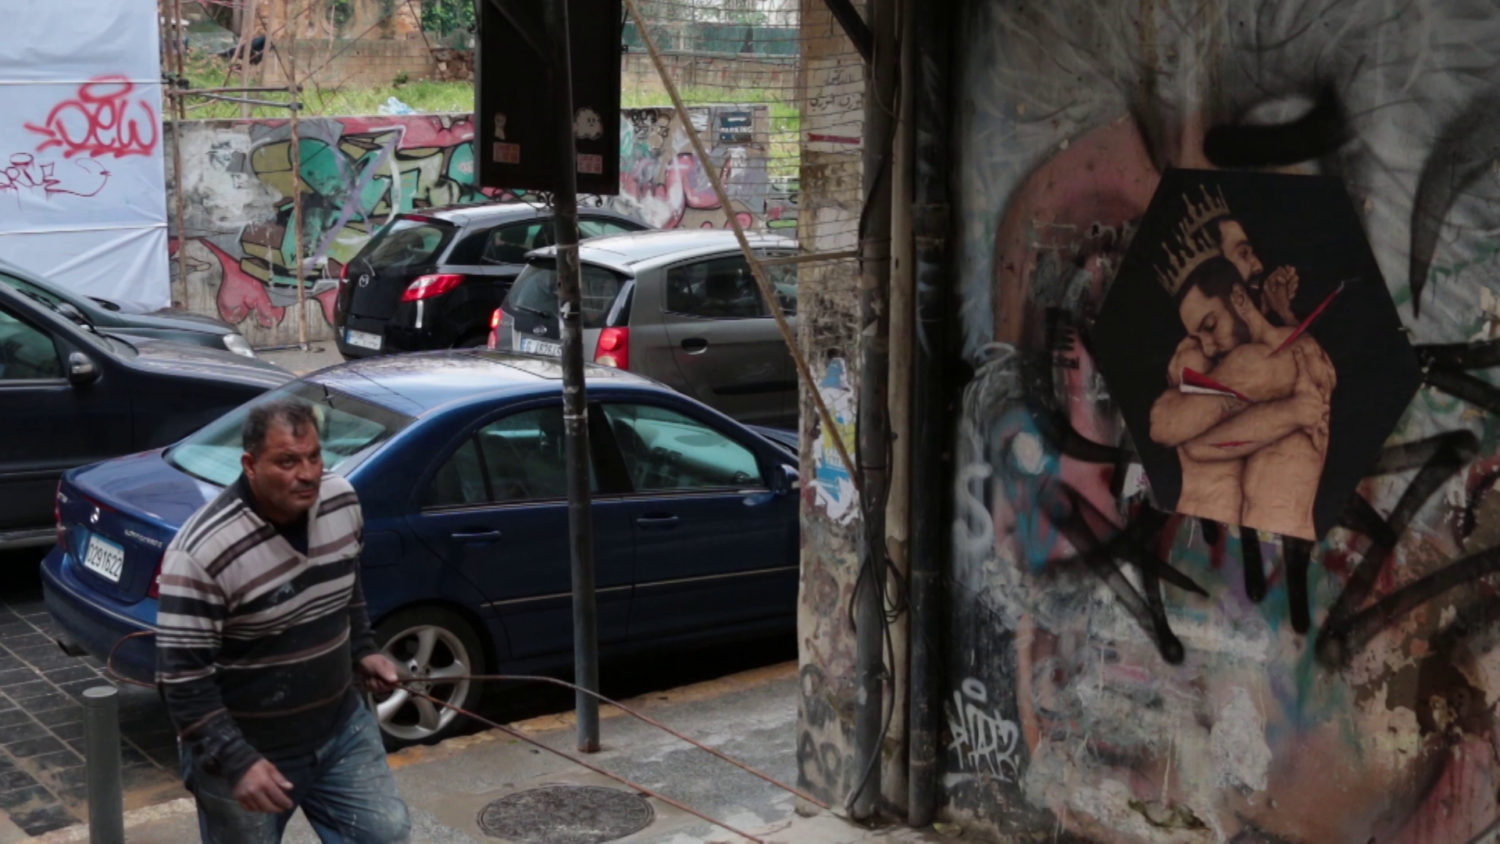 Ein Mann geht in eine Seitenstraße. An der Wand ist eine Zeichnung von zwei Männern mit freiem Oberkörper, die einander im Arm halten.